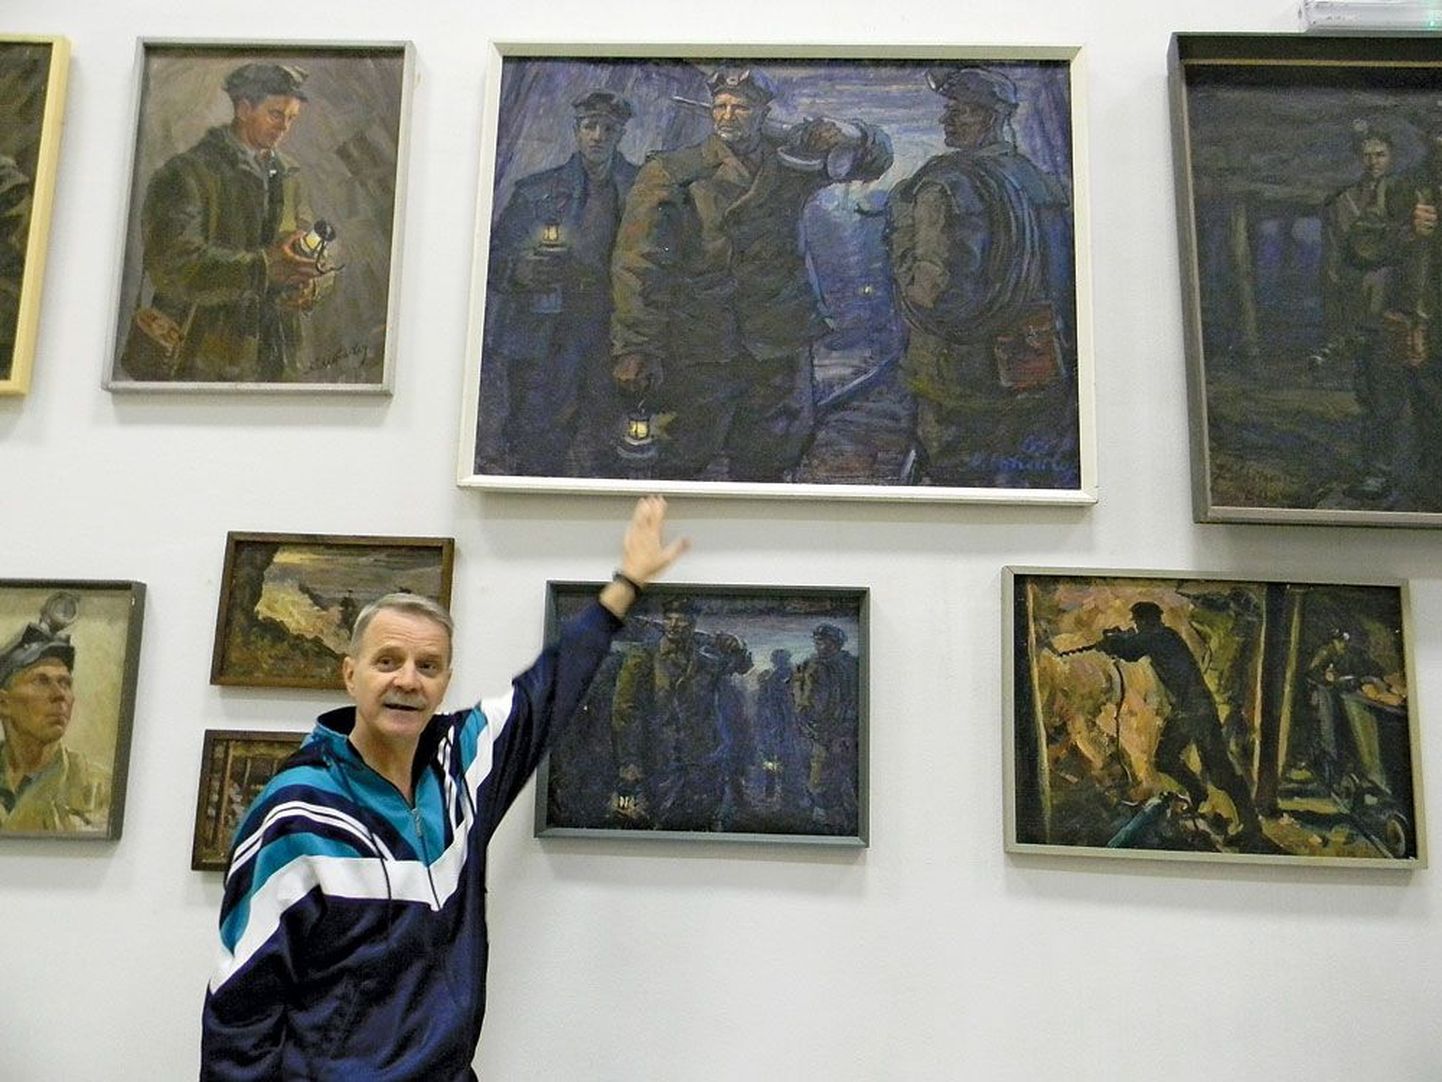 Анвар Варинурм у полотна Константина Михайлова «Шахтеры» объясняет, почему картина висит так высоко.